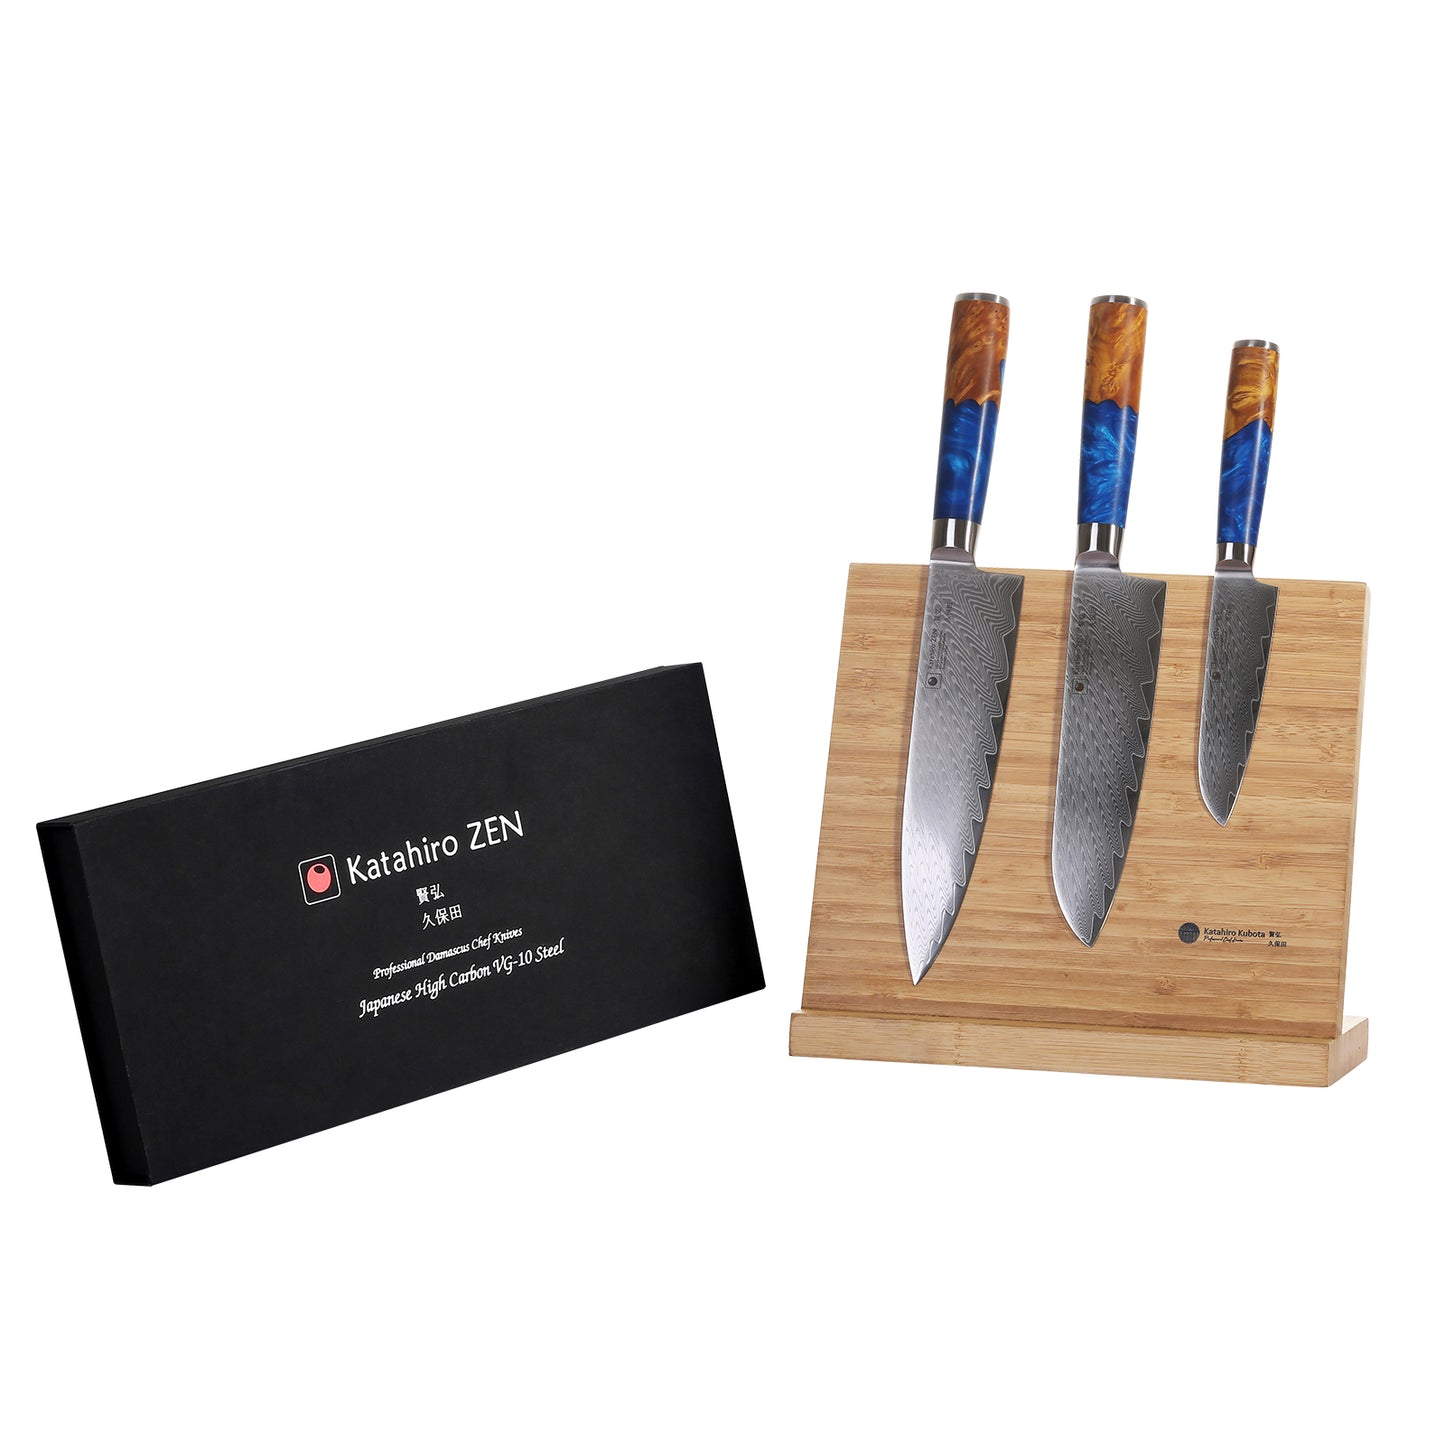 3-tlg. Katahiro Zen Damast Kochmesser-Set (8” Koch-, 7” Santoku-, 5” Santokumesser) Griff aus weißem Ahorn-Wurzelholz und blauem Acrylharz mit Bambus Magnetmesserhalter